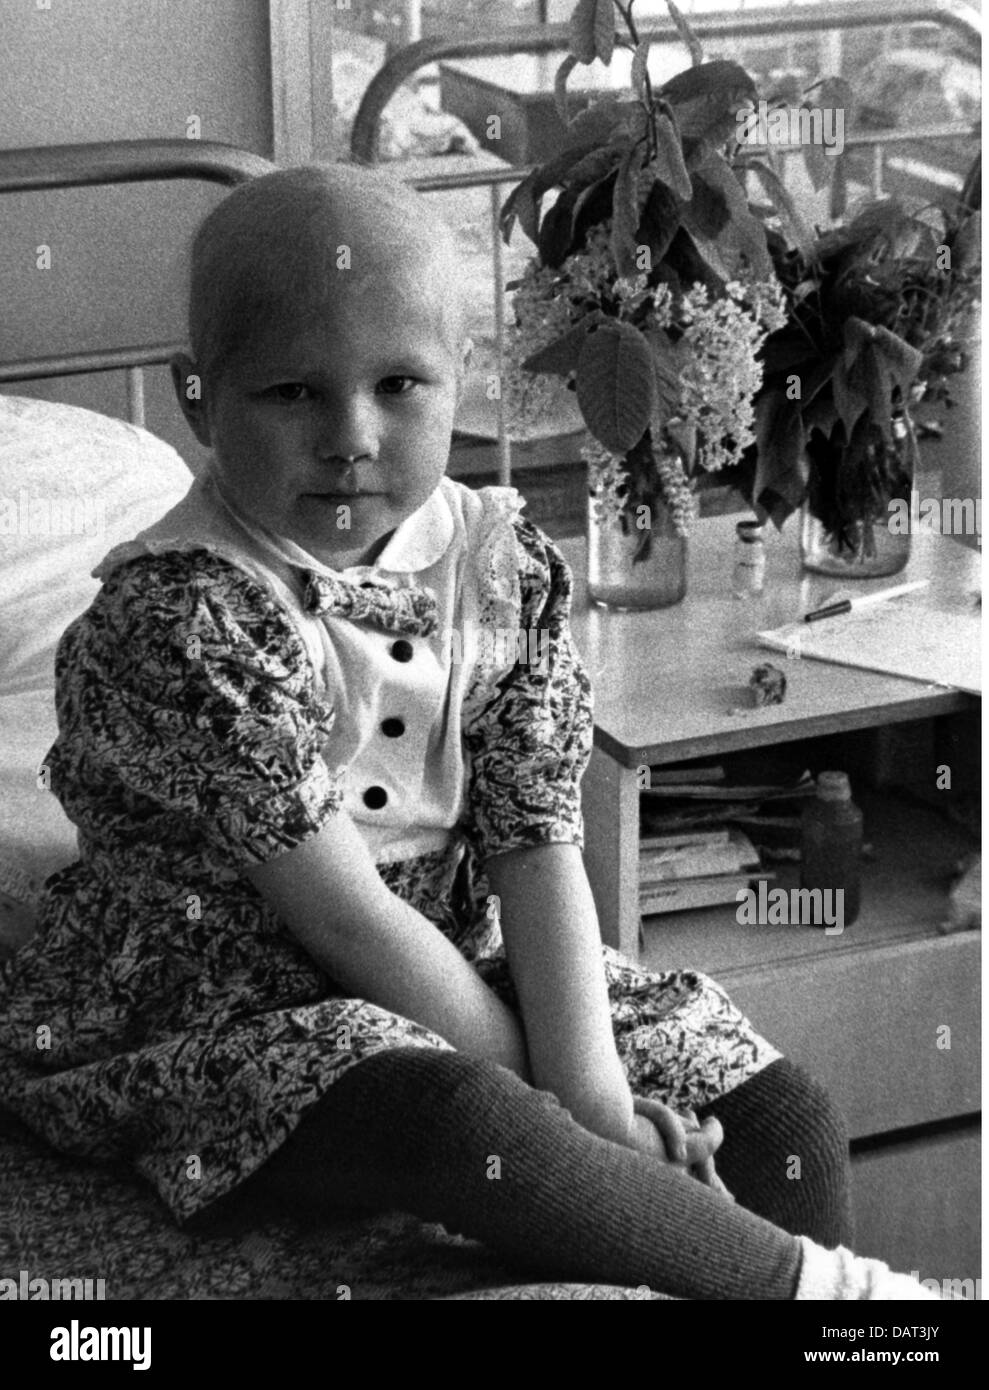 Medizin, Kranke, kleines Mädchen, radioaktiv verseucht nach der Tschernobyl-Katastrophe, in einem Kinderkrankenhaus in Nischni Nowgorod, Russland, April 1992, Zusatzrechte-Clearences-nicht verfügbar Stockfoto